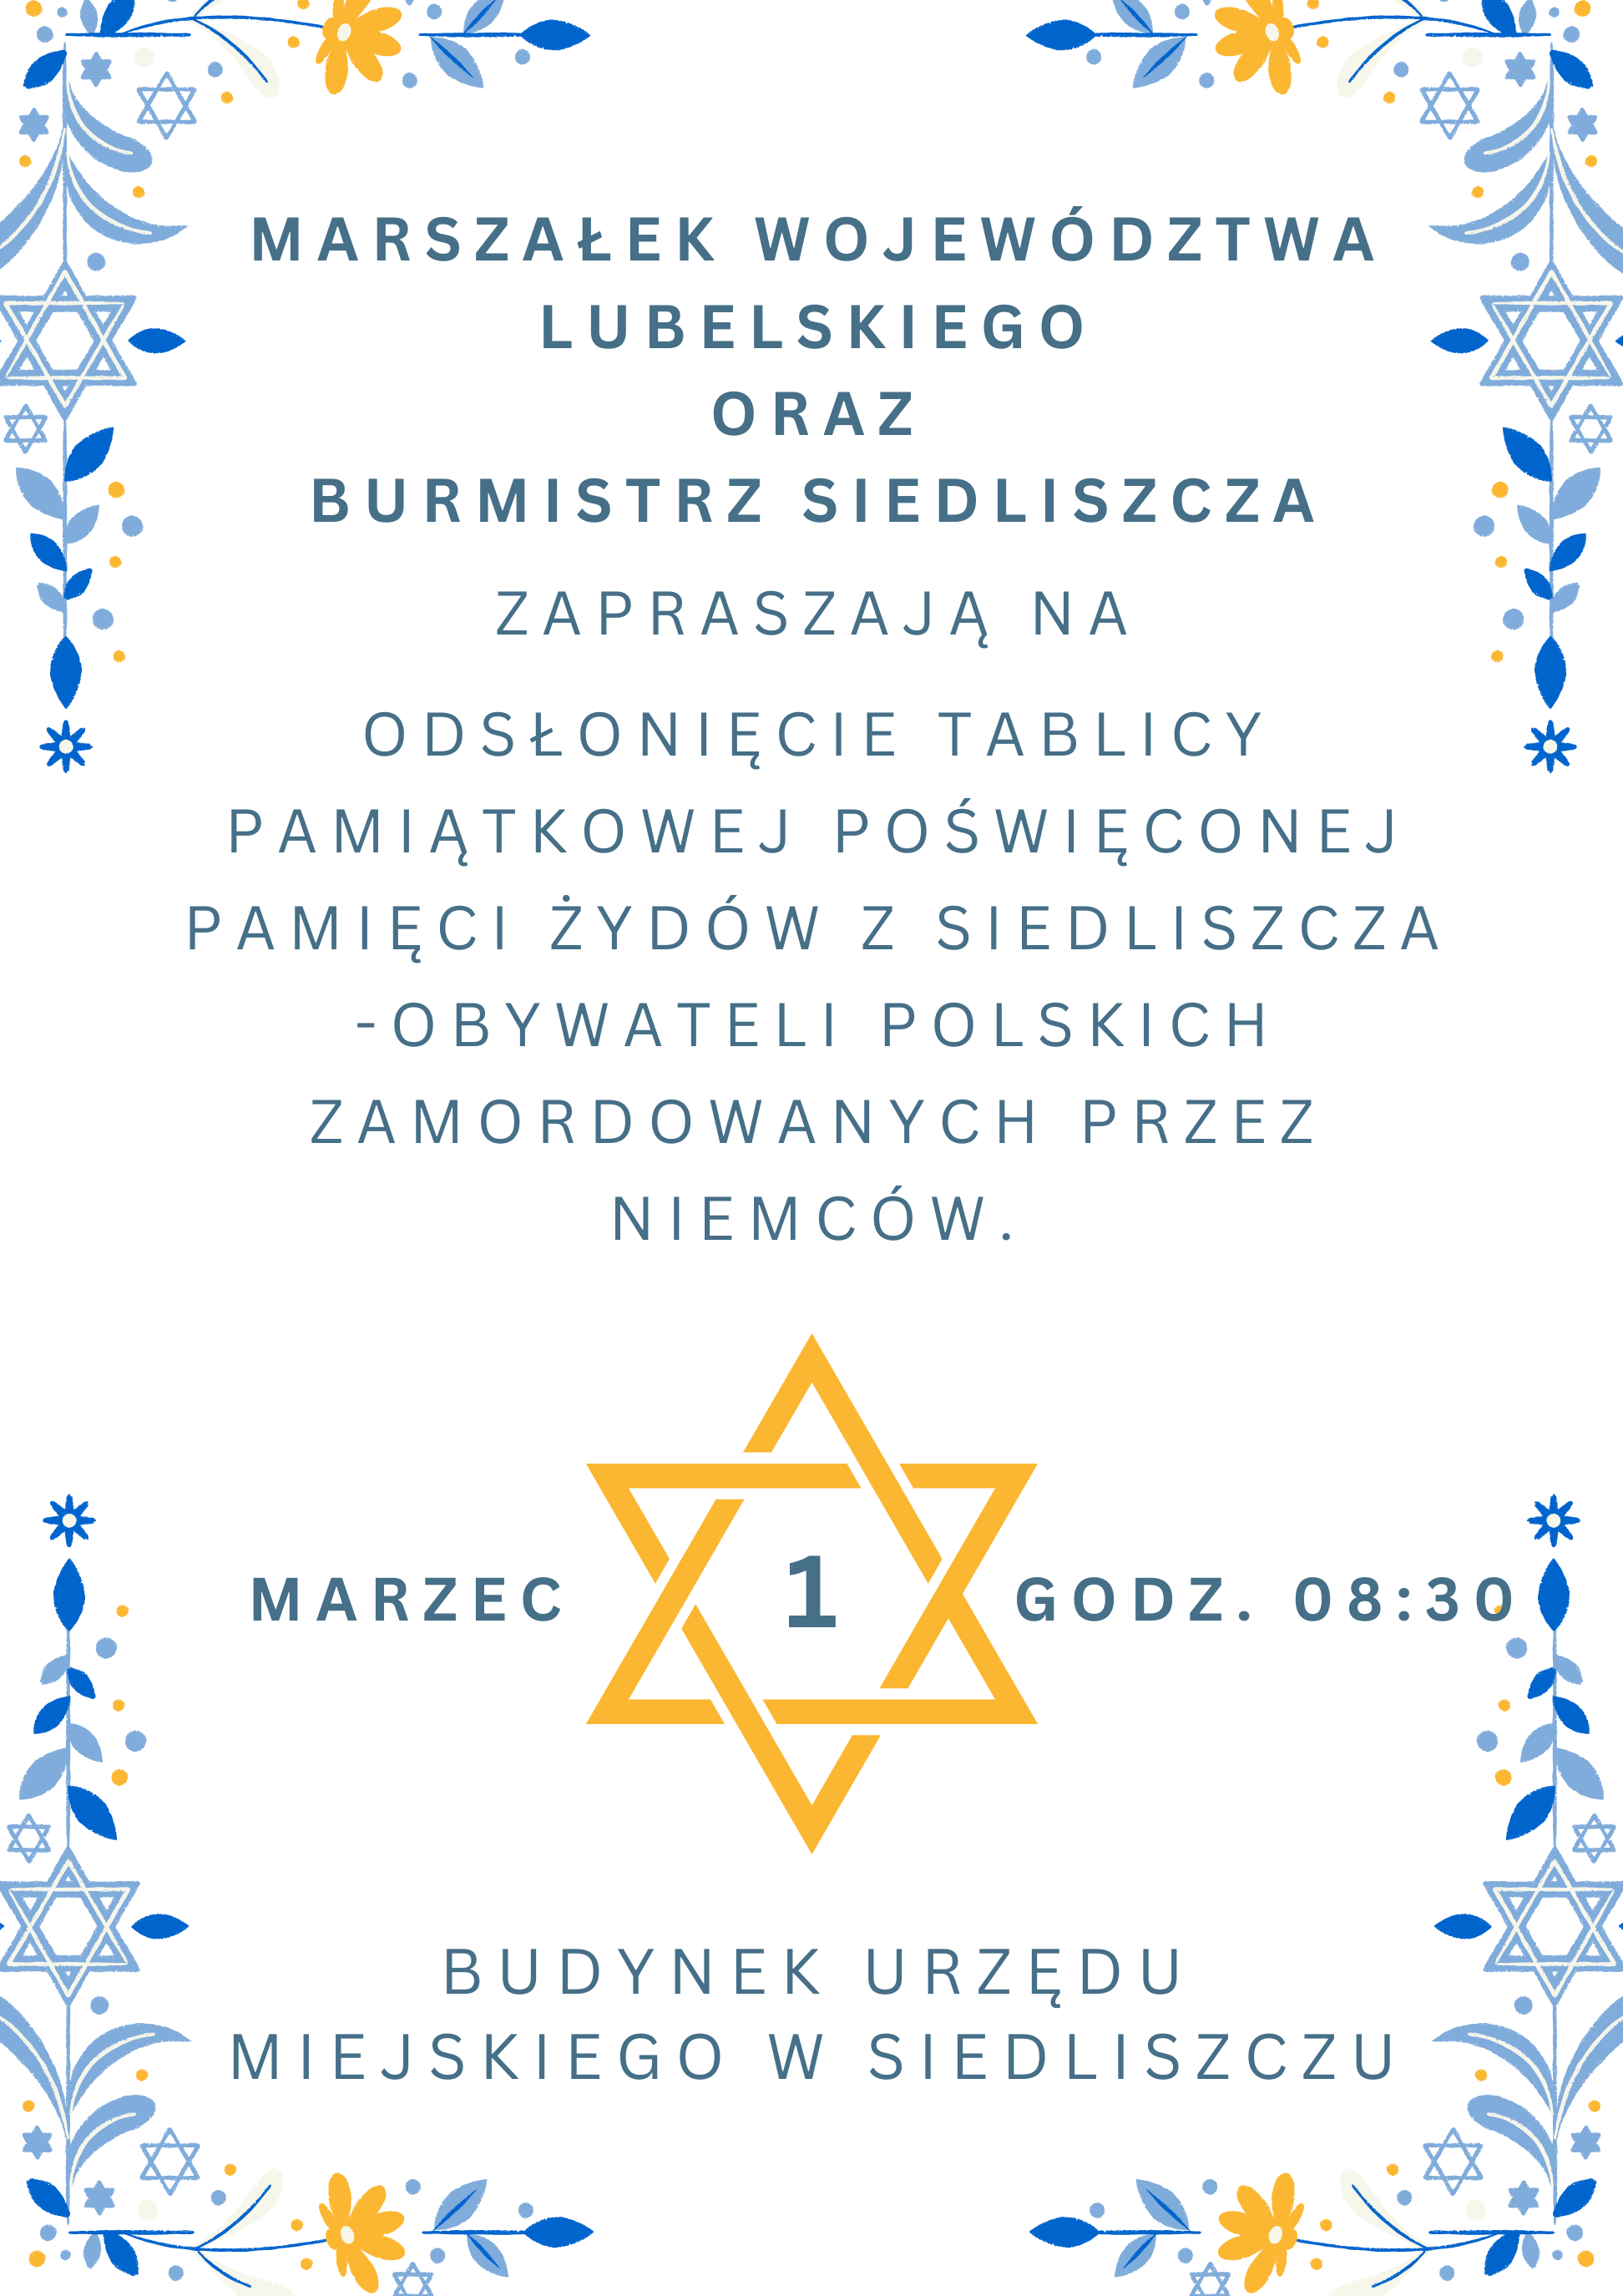 Zdjęcie poglądowe do artykułu: Zaproszenie na odsłonięcie tablicy pamiątkowej ( Zaproszenie na odsłonięcie tablicy pamiątkowej poświęconej pamięci Żydów z Siedliszcza)